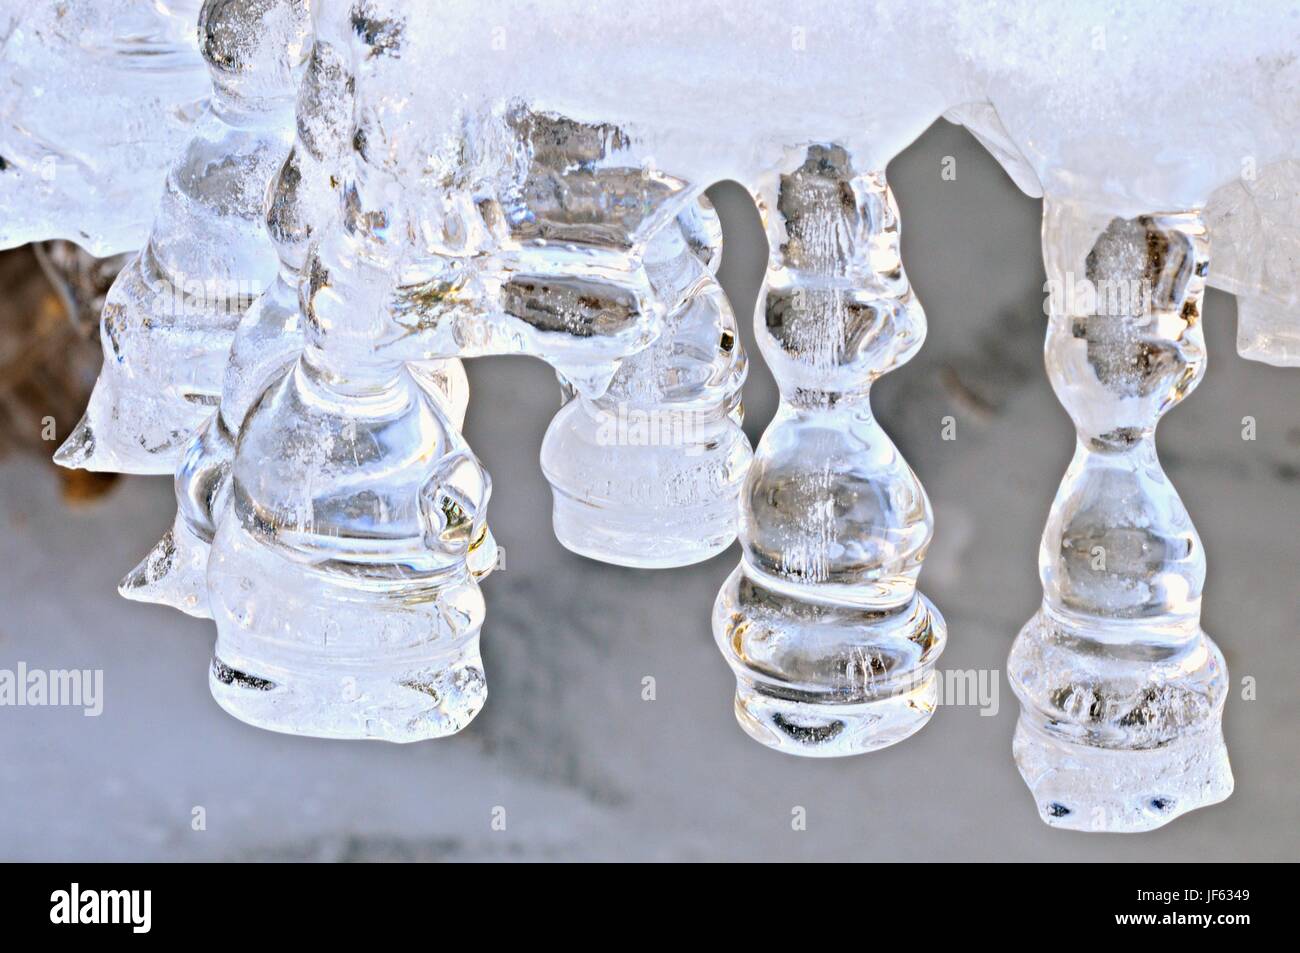 Von mutter natur Eiszapfen geformt Stockfoto